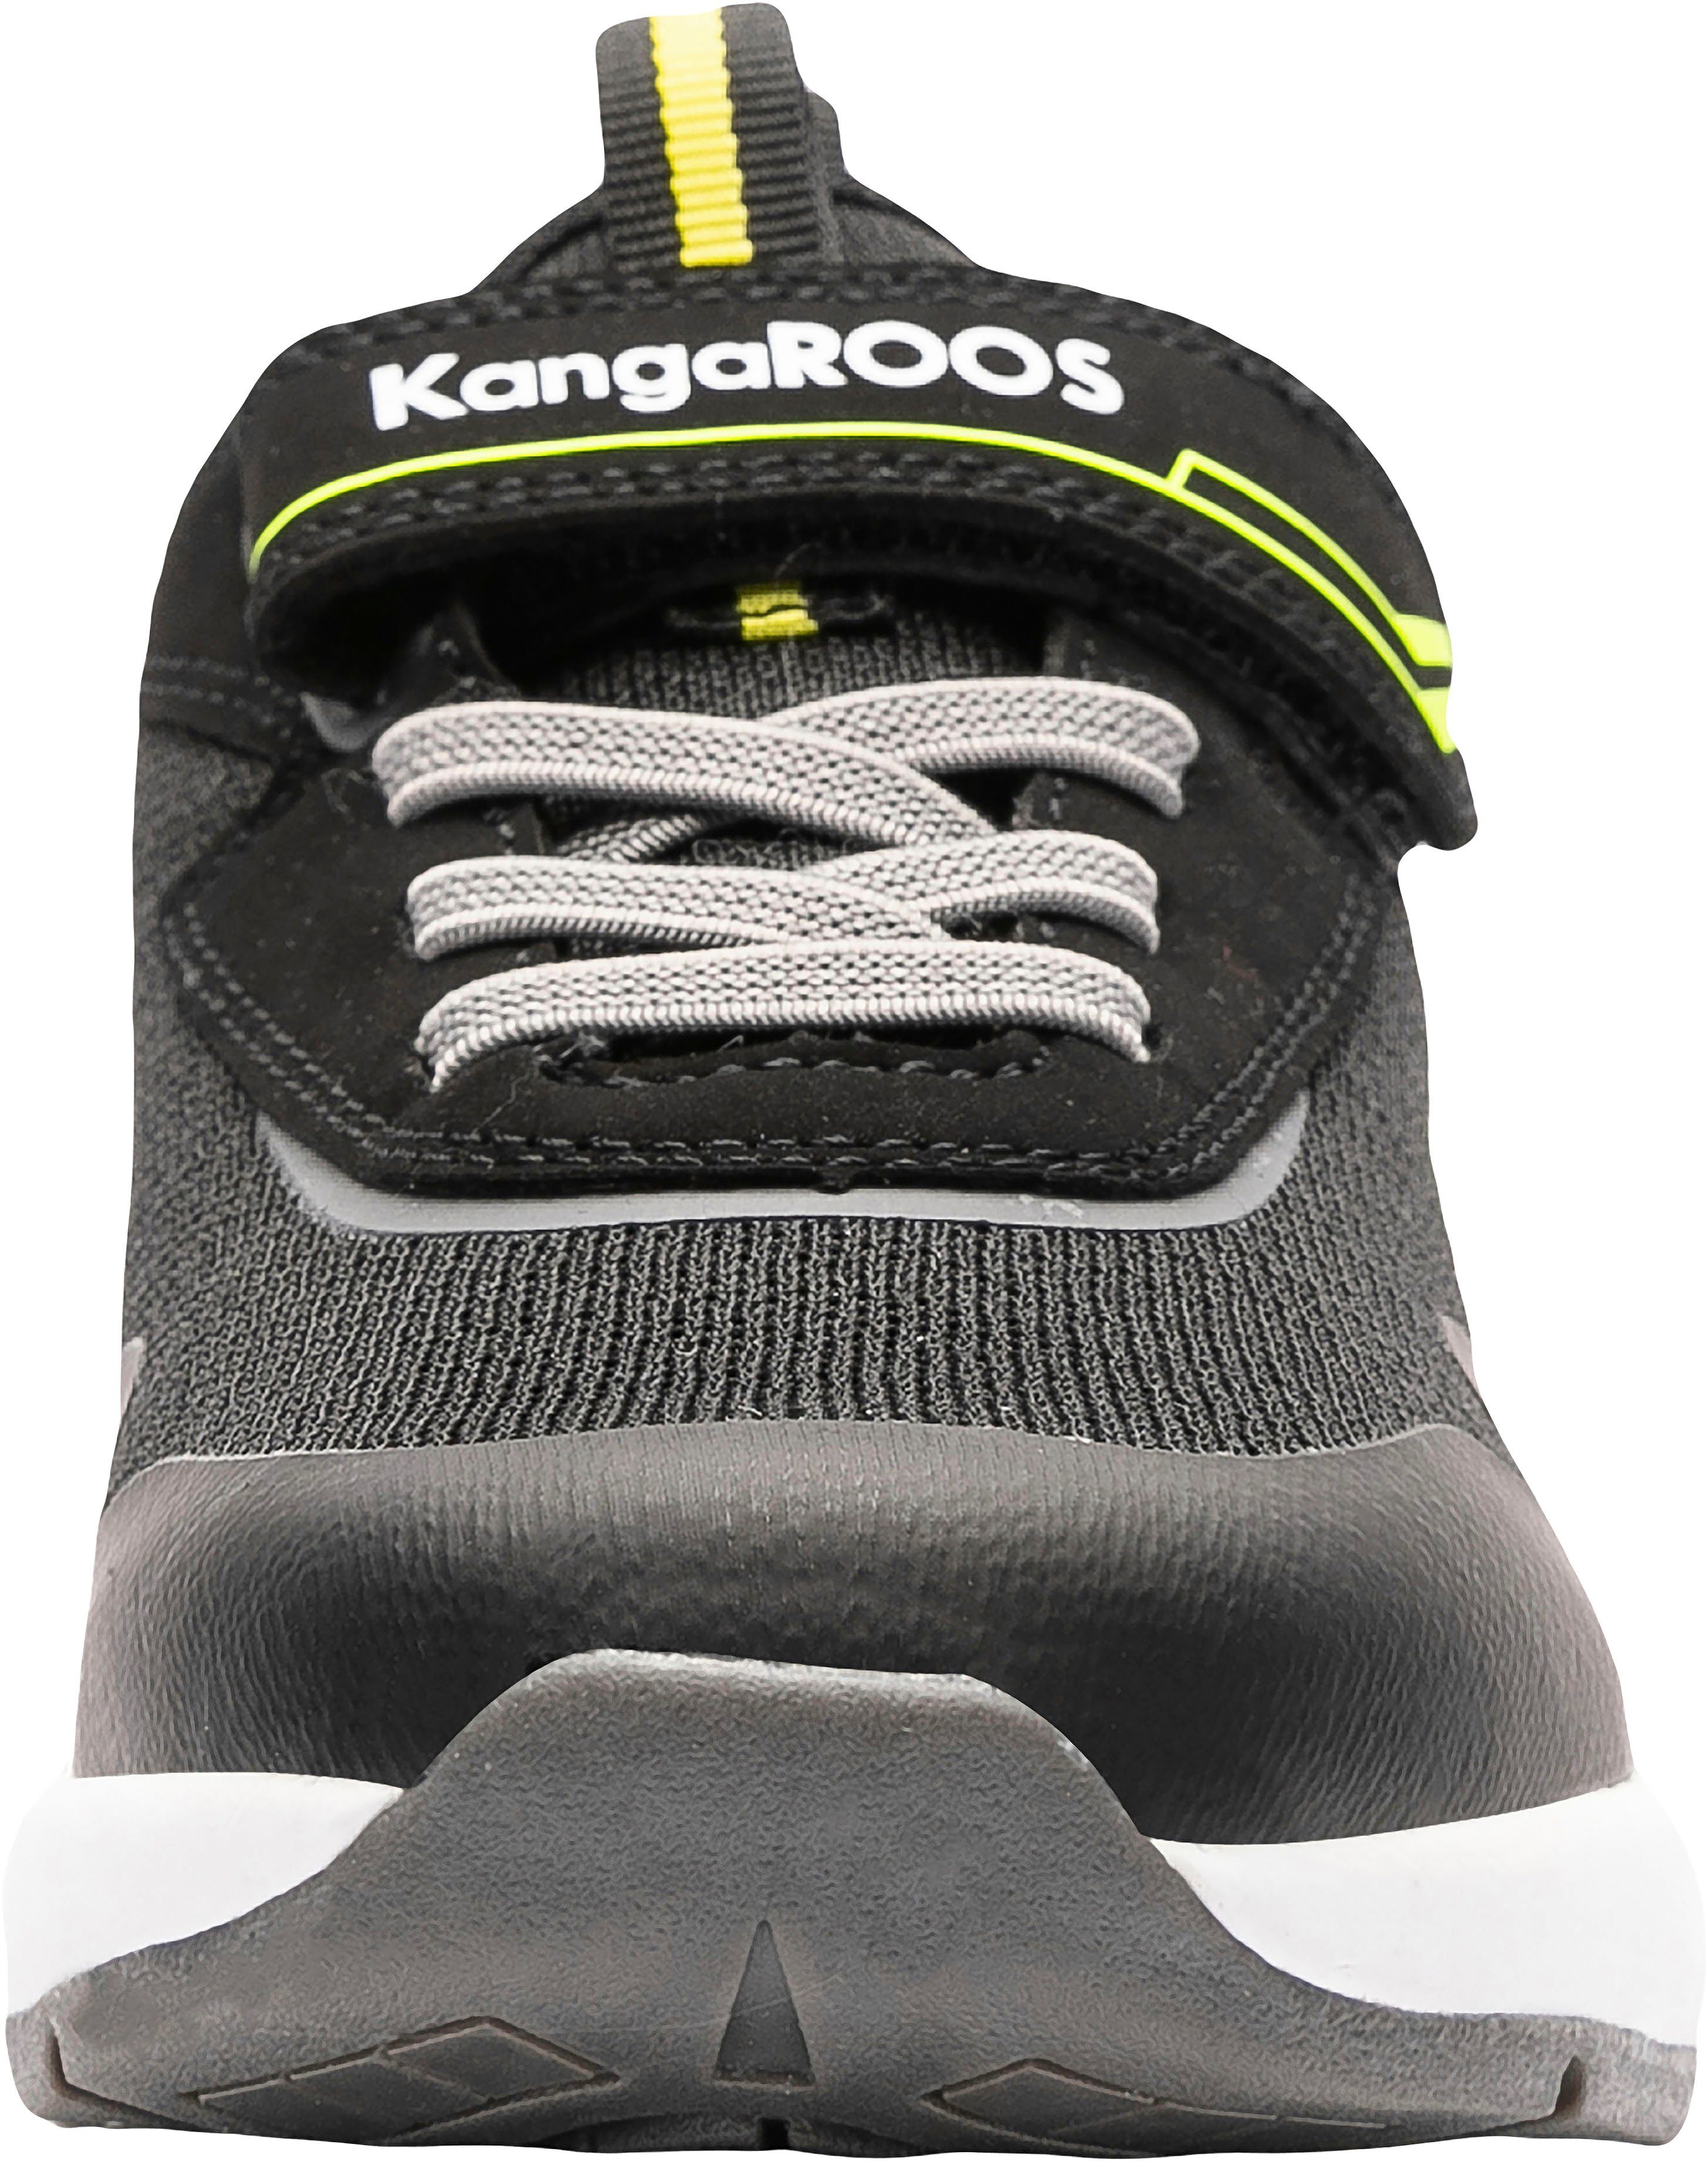 KangaROOS KD-Gym schwarz-gelb EV Sneaker Klettverschluss mit